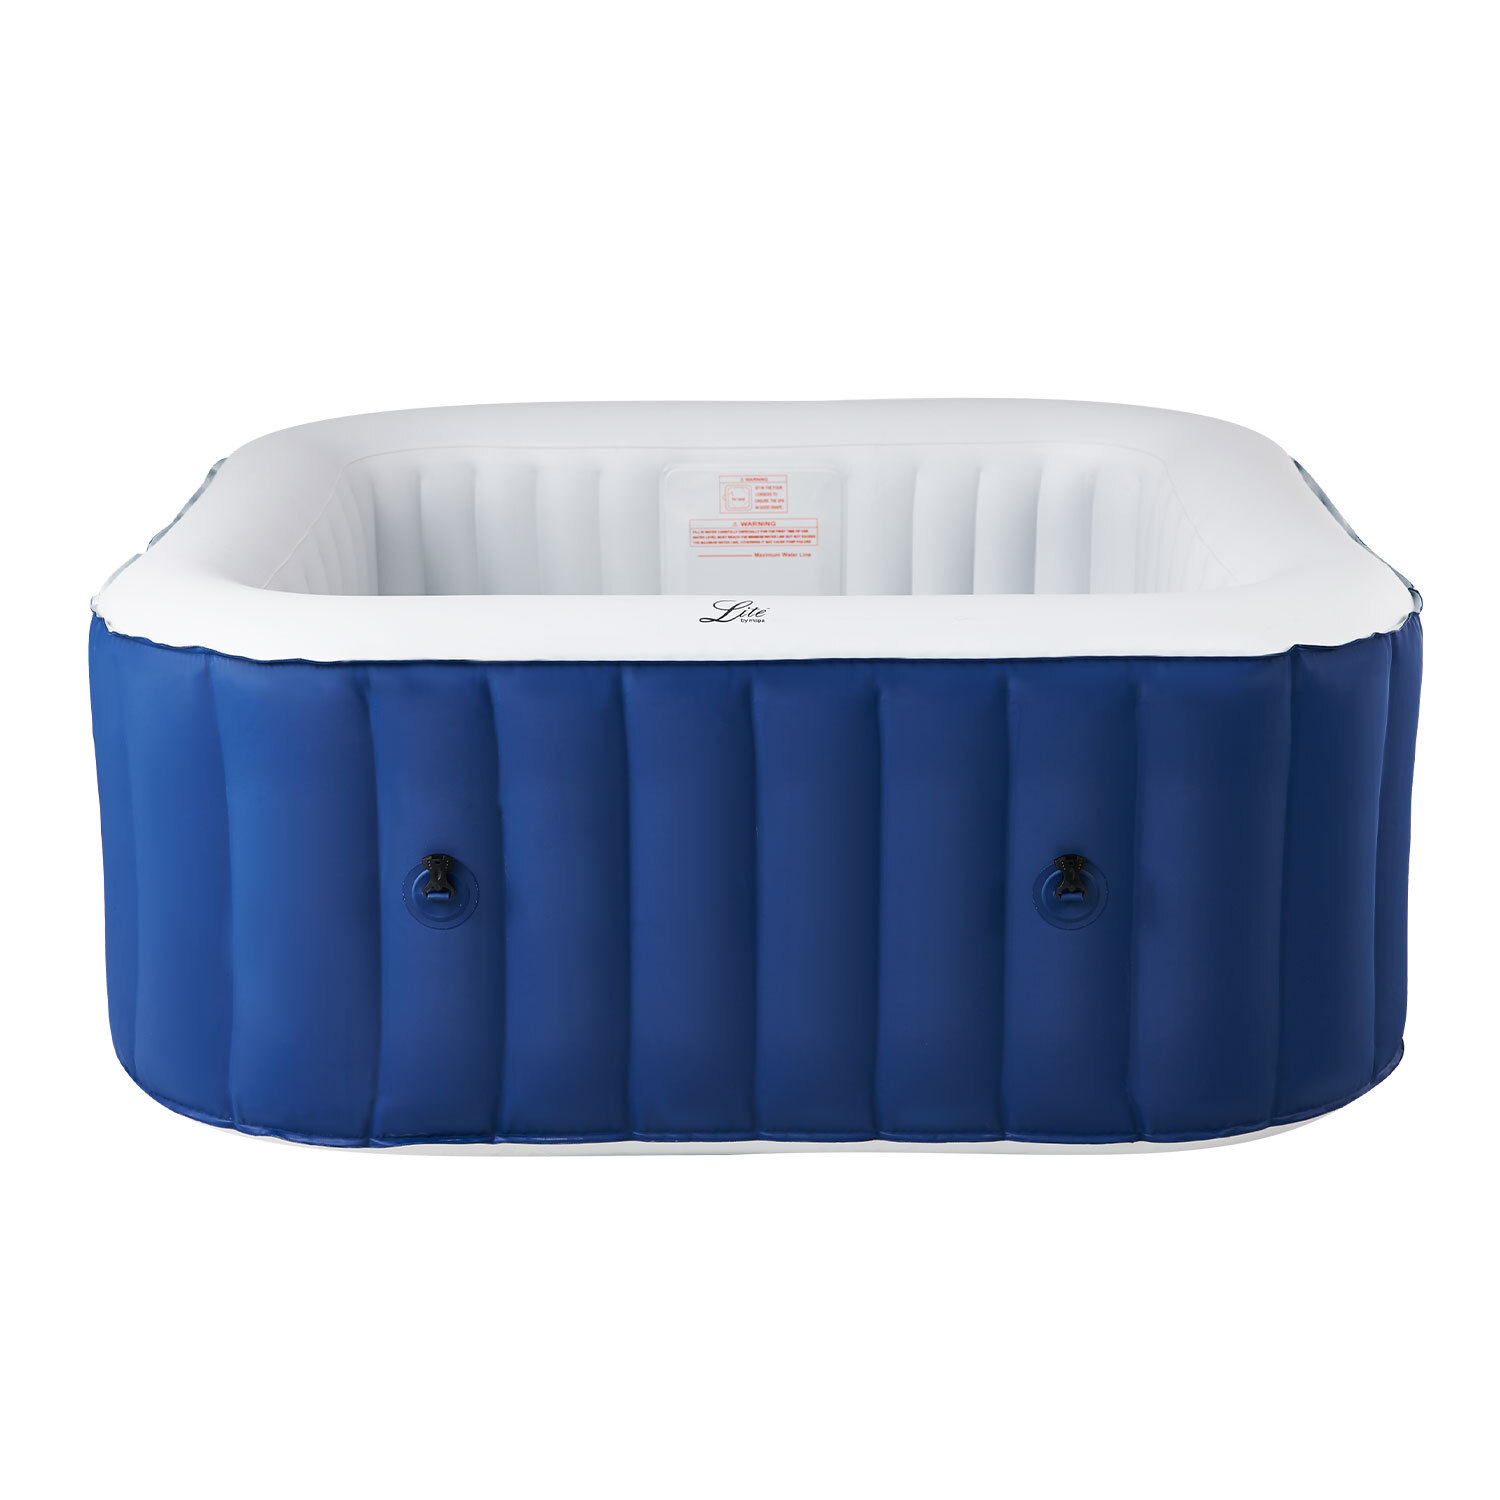 Mspa Lite Hot Tub - Blue / 6 / Square Image